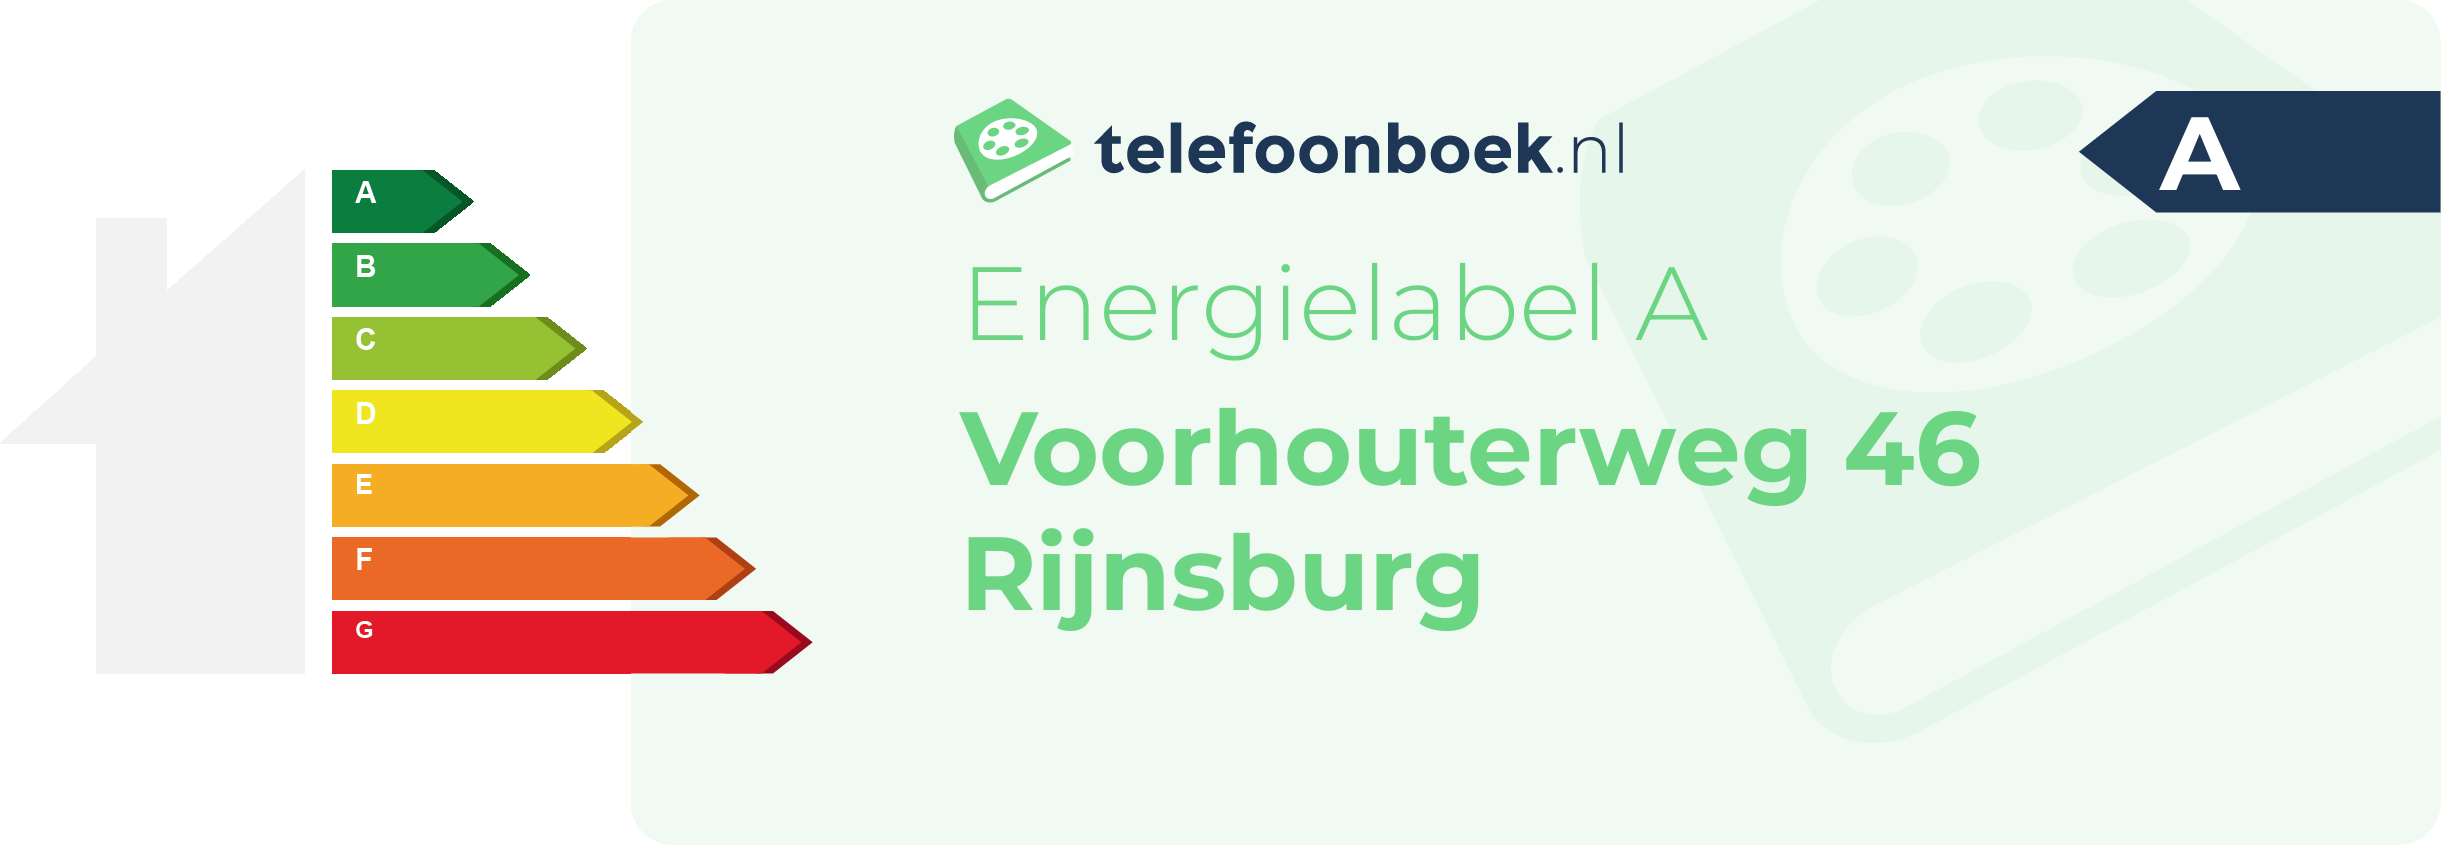 Energielabel Voorhouterweg 46 Rijnsburg